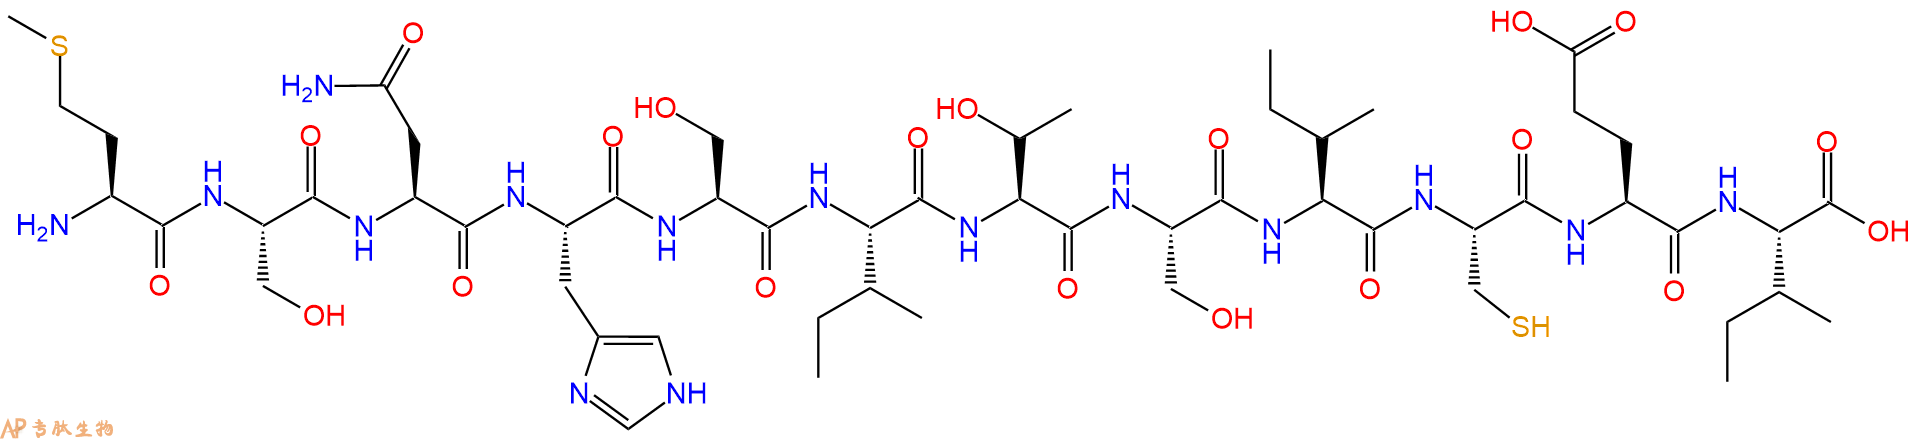 专肽生物产品H2N-Met-Ser-Asn-His-Ser-Ile-Thr-Ser-Ile-Cys-Glu-Ile-COOH